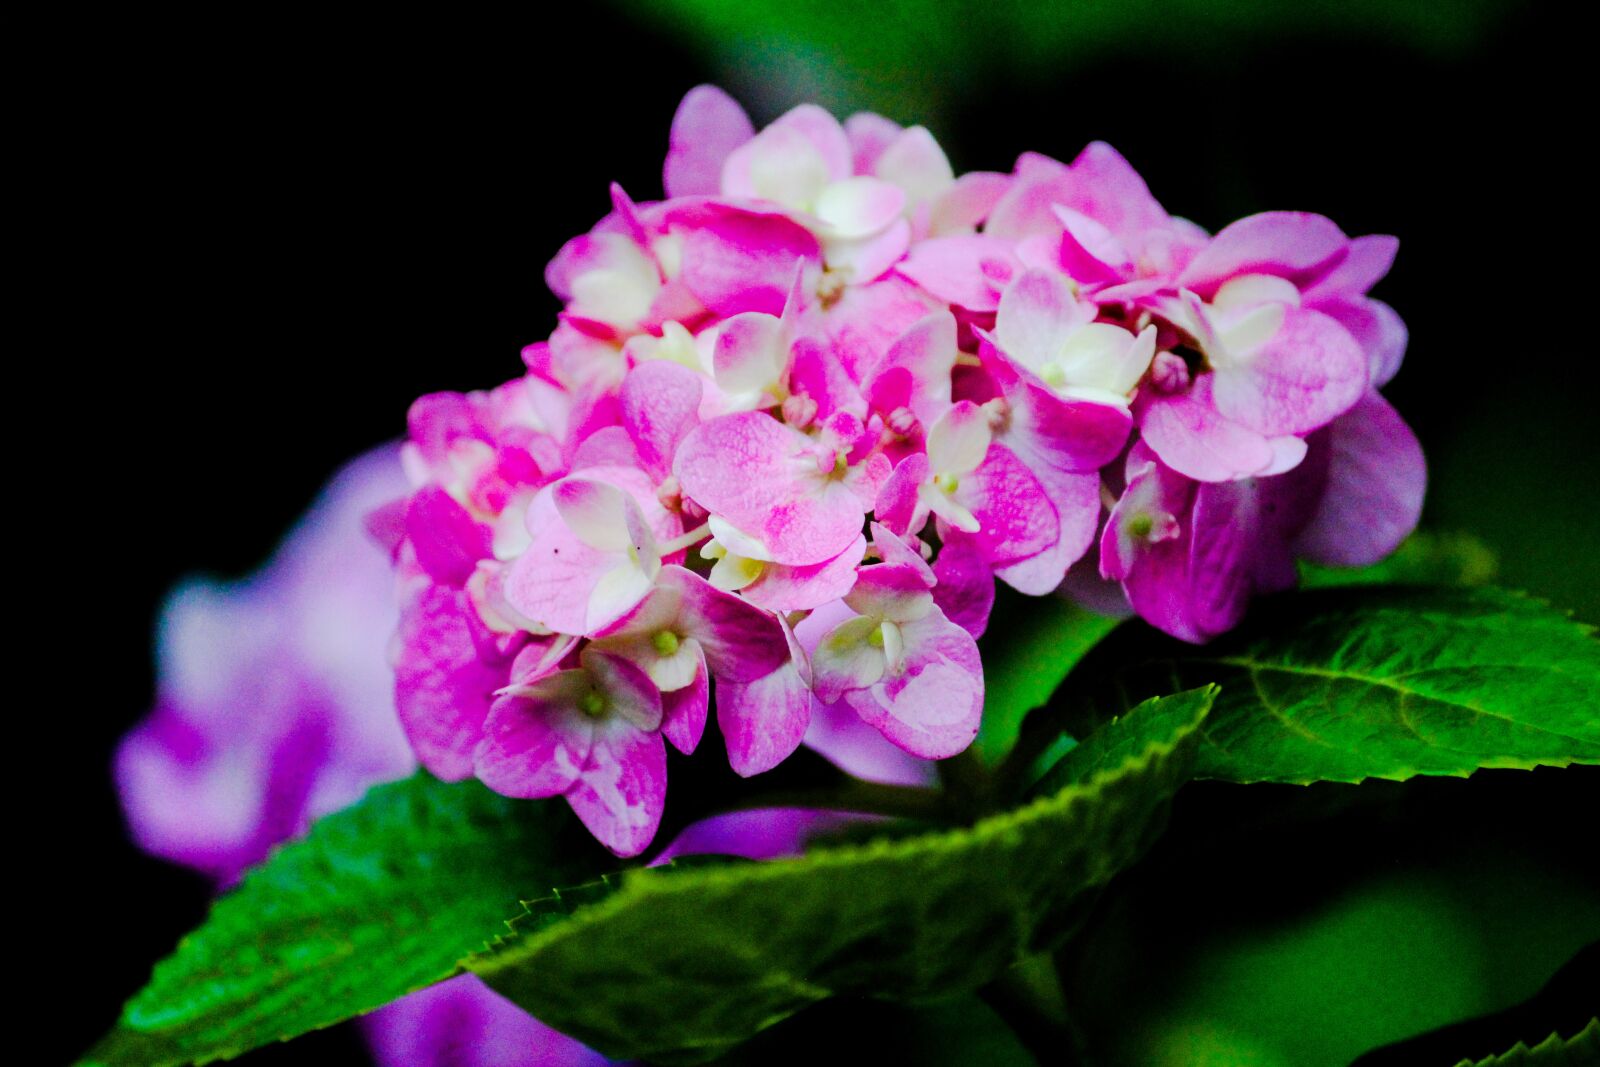 Canon EOS 1200D (EOS Rebel T5 / EOS Kiss X70 / EOS Hi) sample photo. Flower, green, garden photography